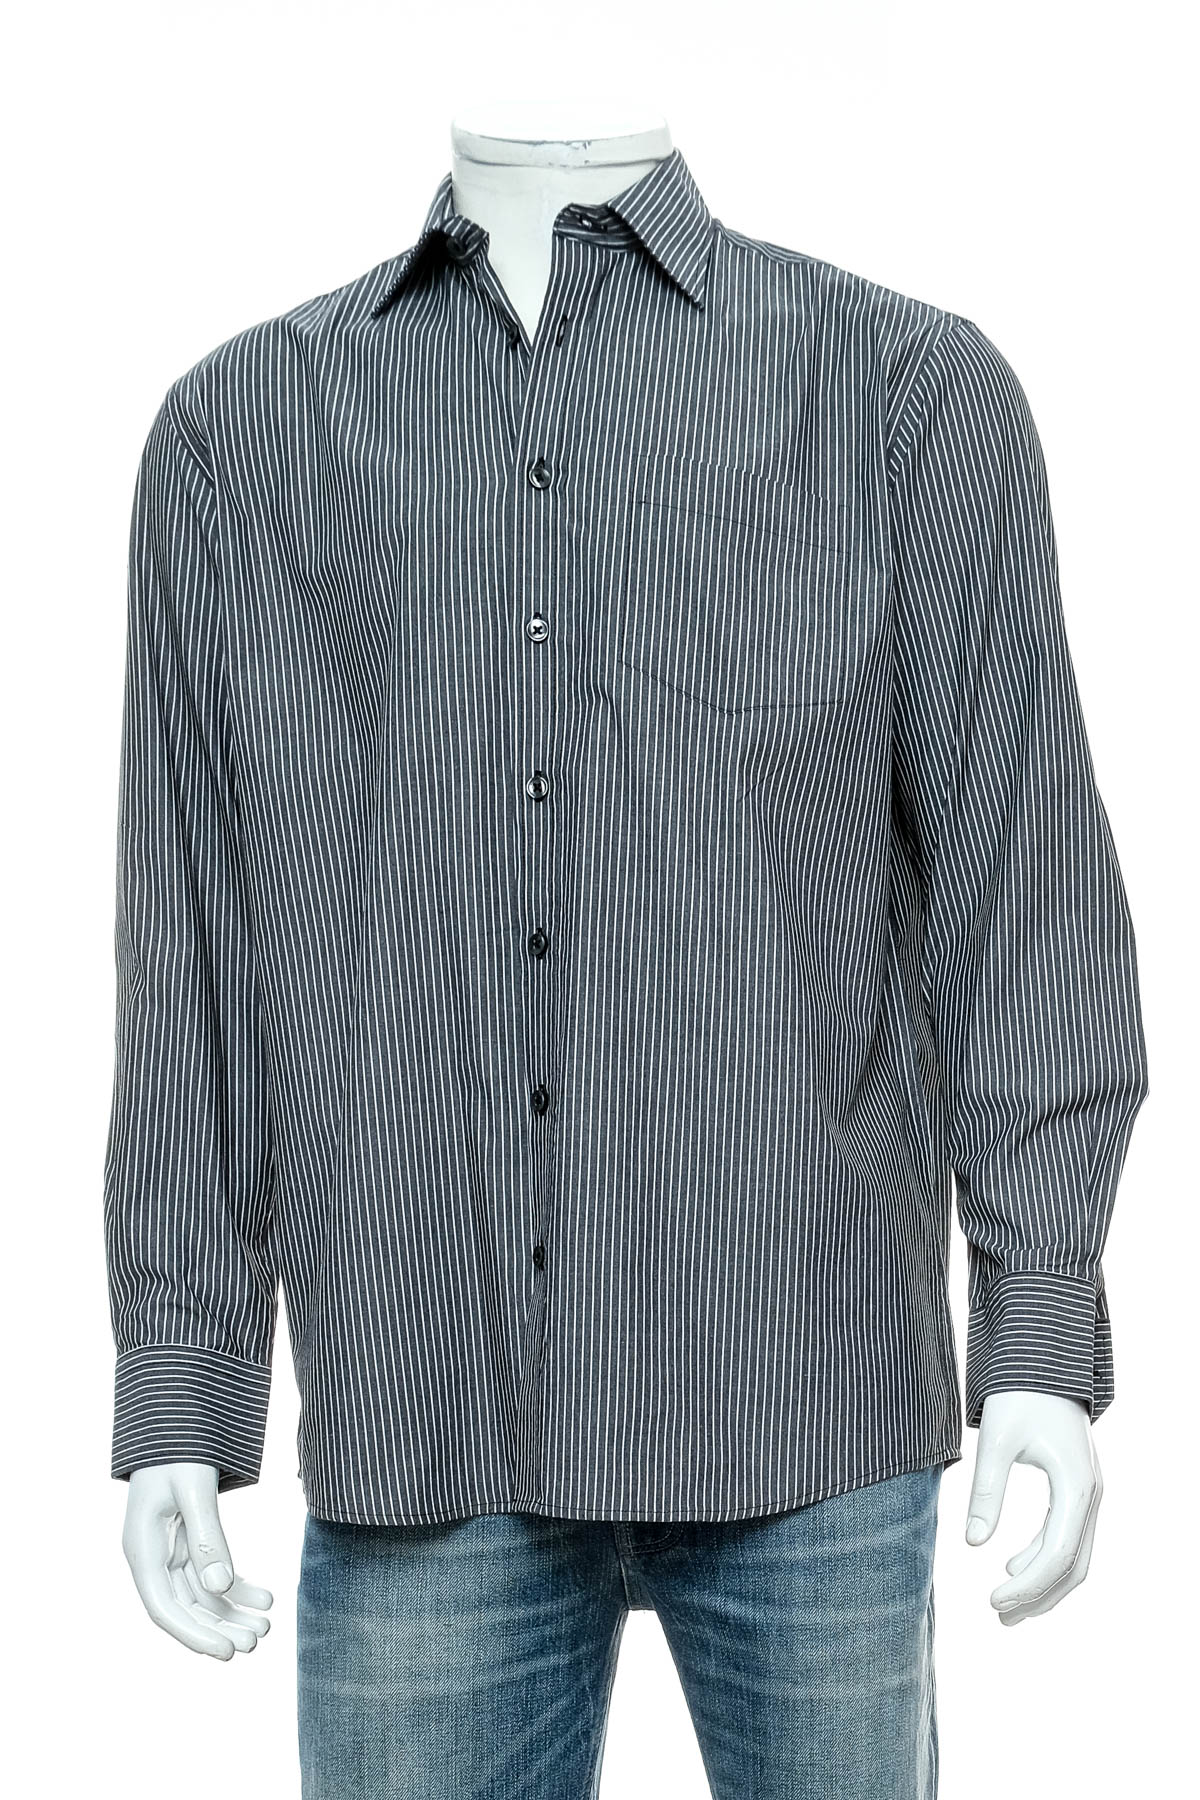 Ανδρικό πουκάμισο - MILLER&MONROE - 0